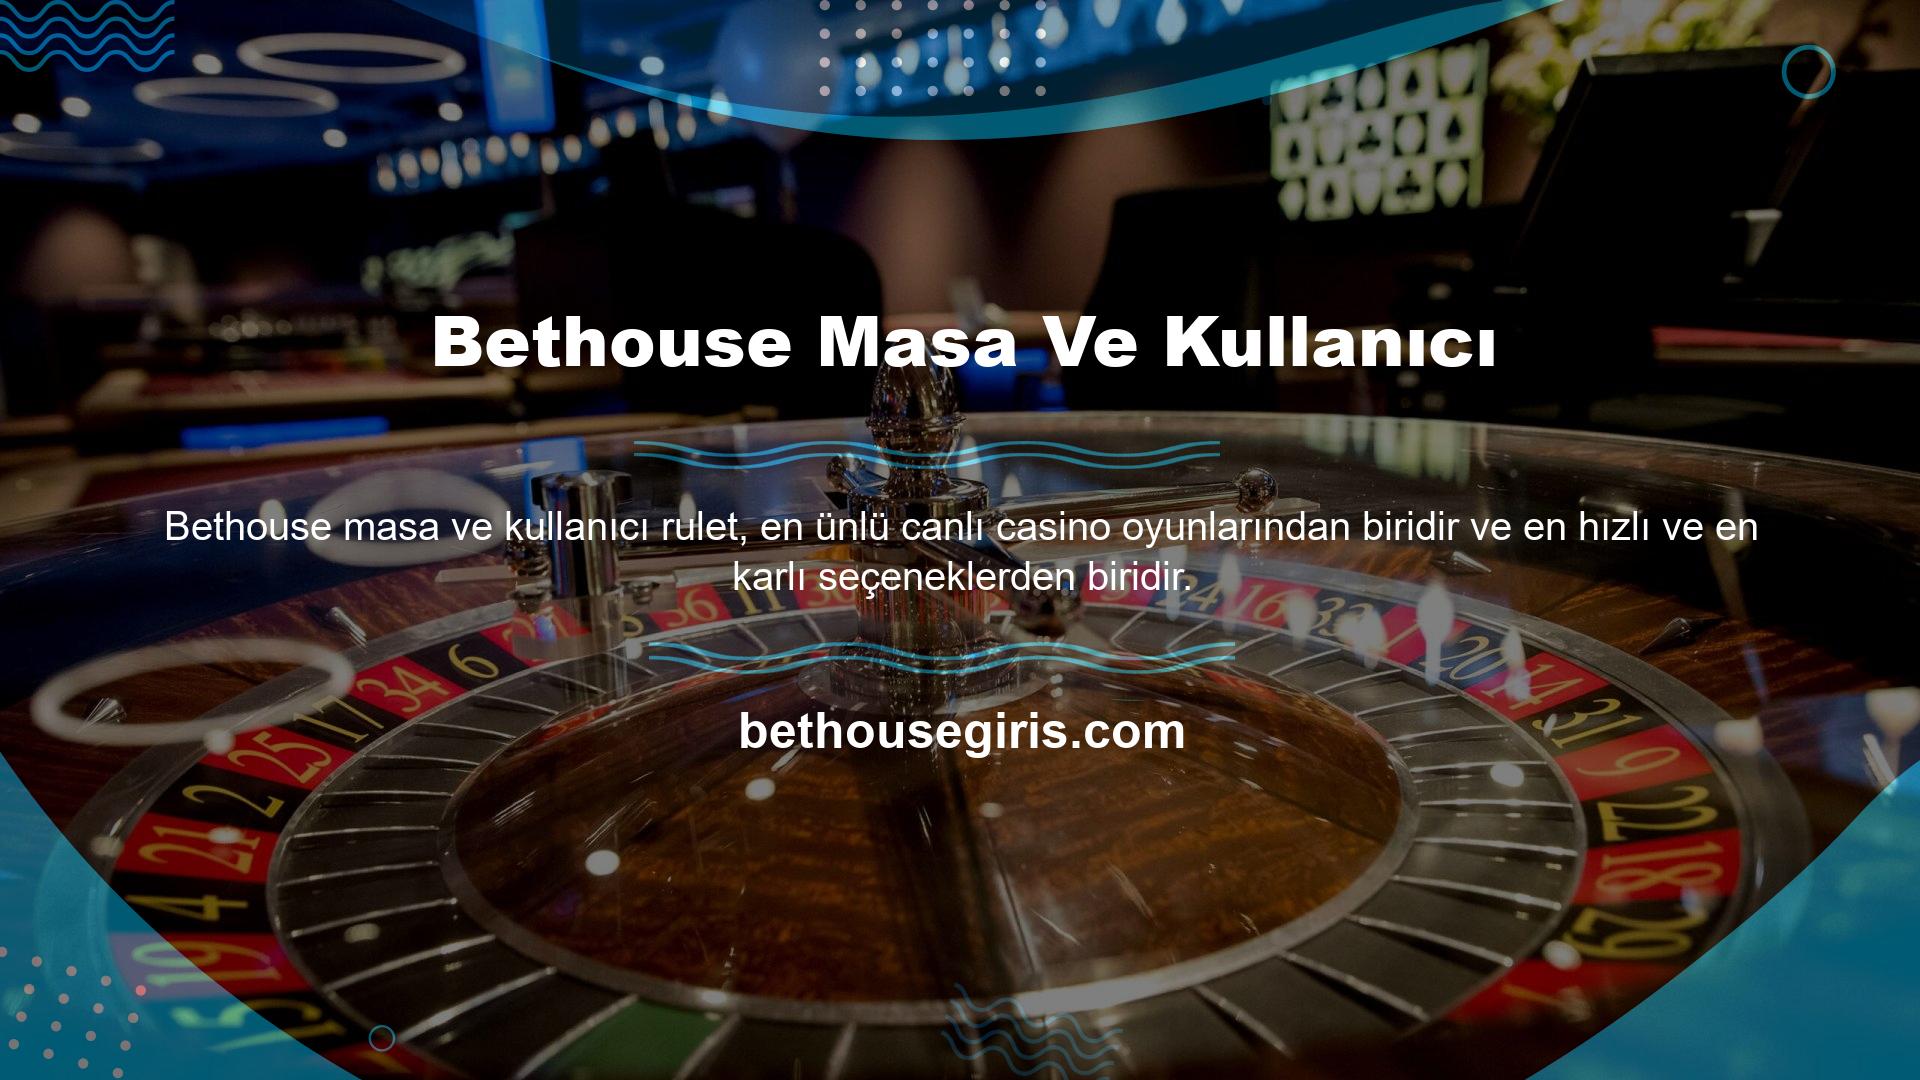 Bethouse web sitesi rulet temalarına göre farklı masalar ve kullanıcılar düzenlemektedir